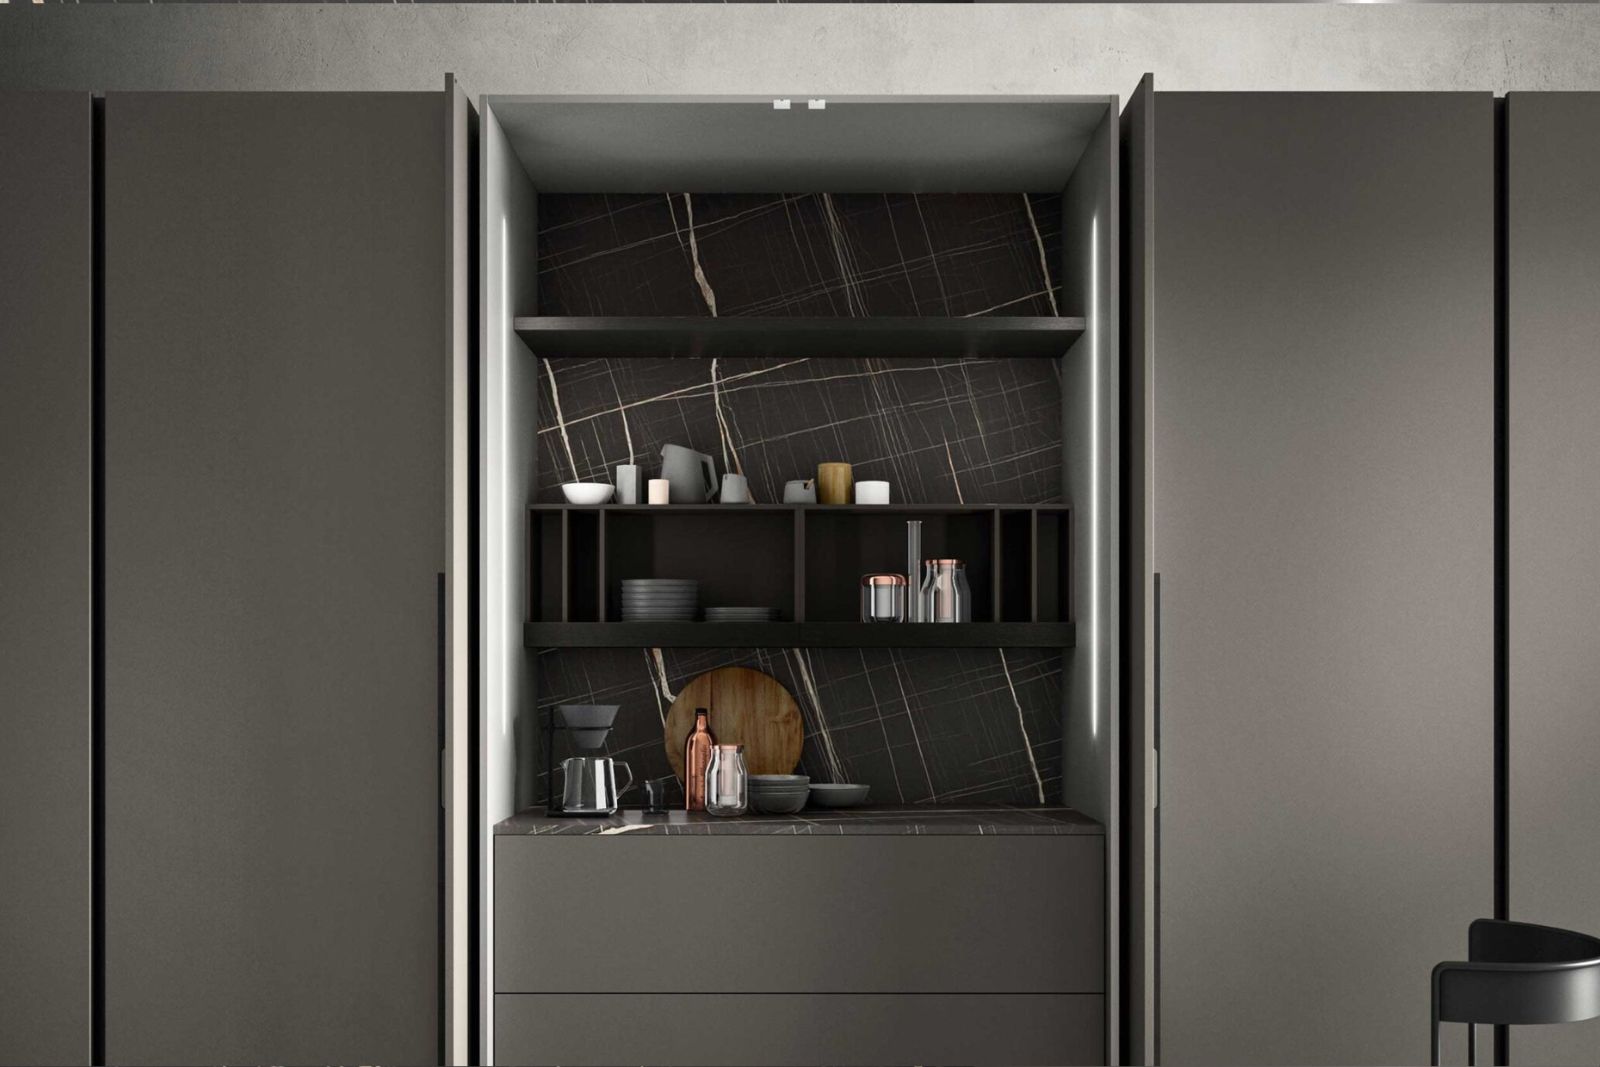 Grandiose kitchen cabinets